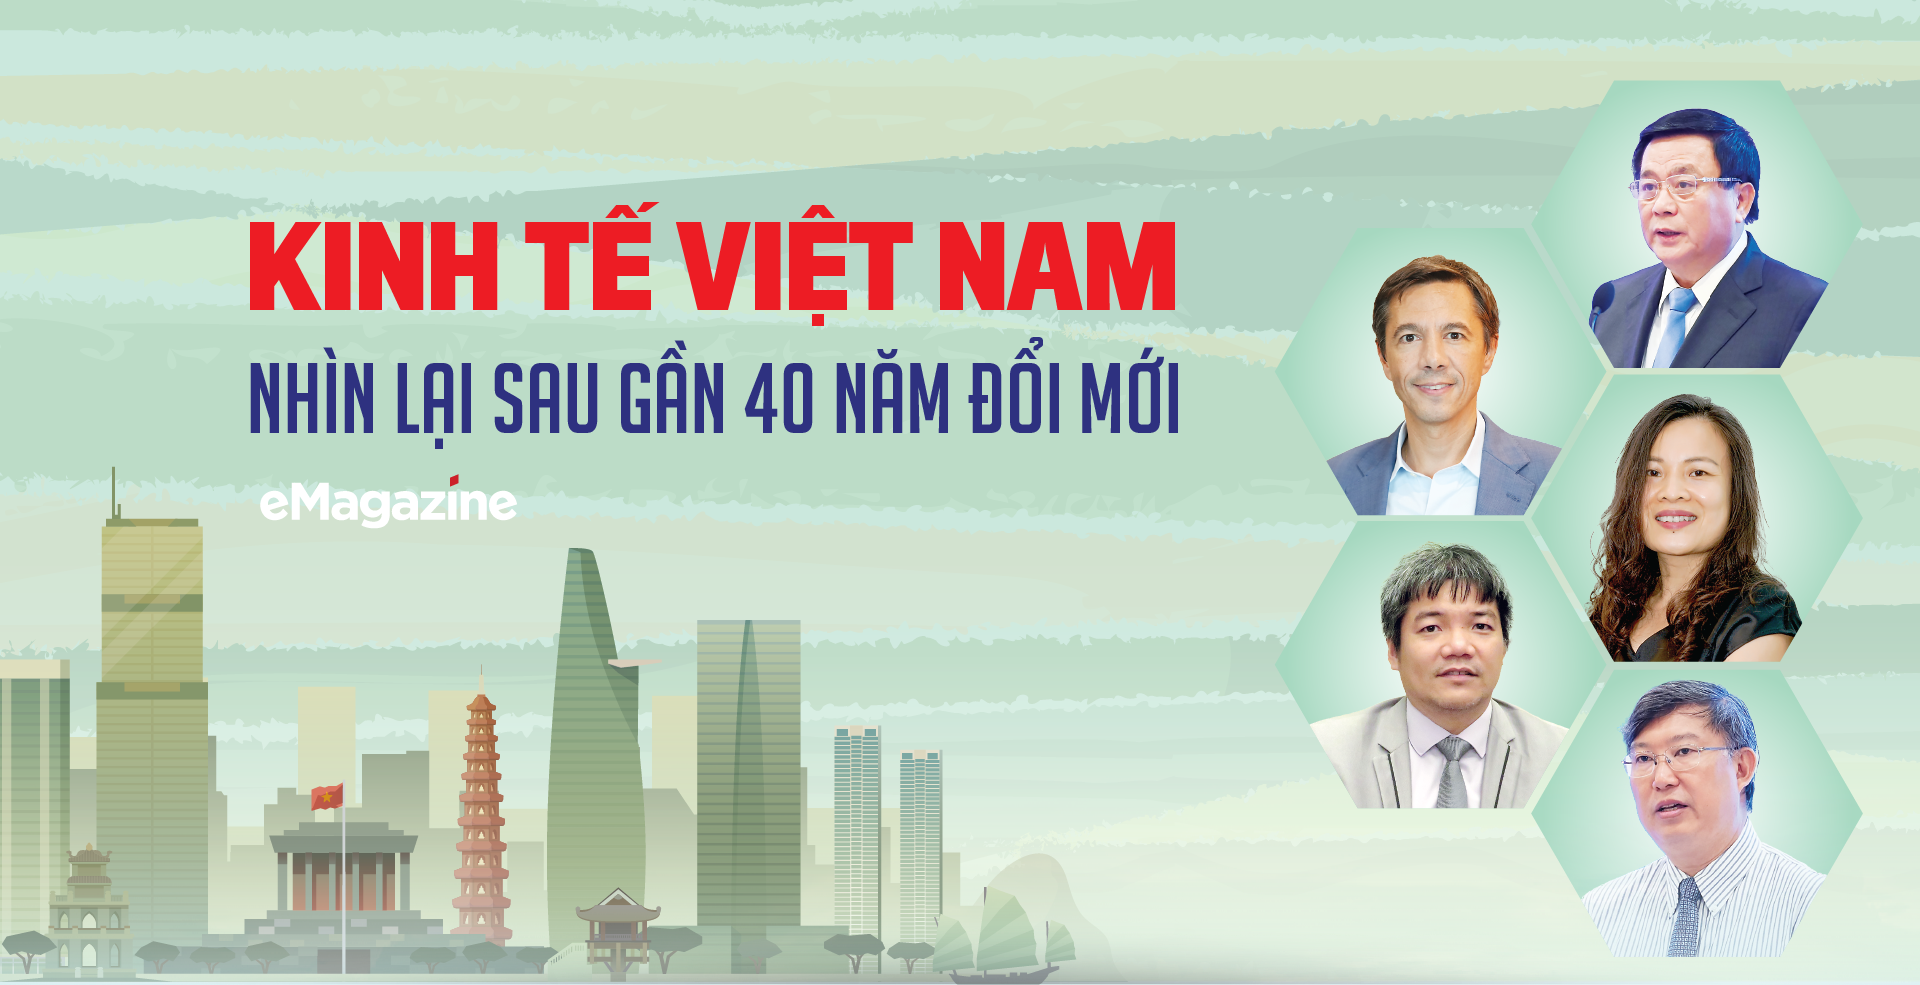 Kinh tế Việt Nam nhìn lại sau gần 40 năm đổi mới - Ảnh 1